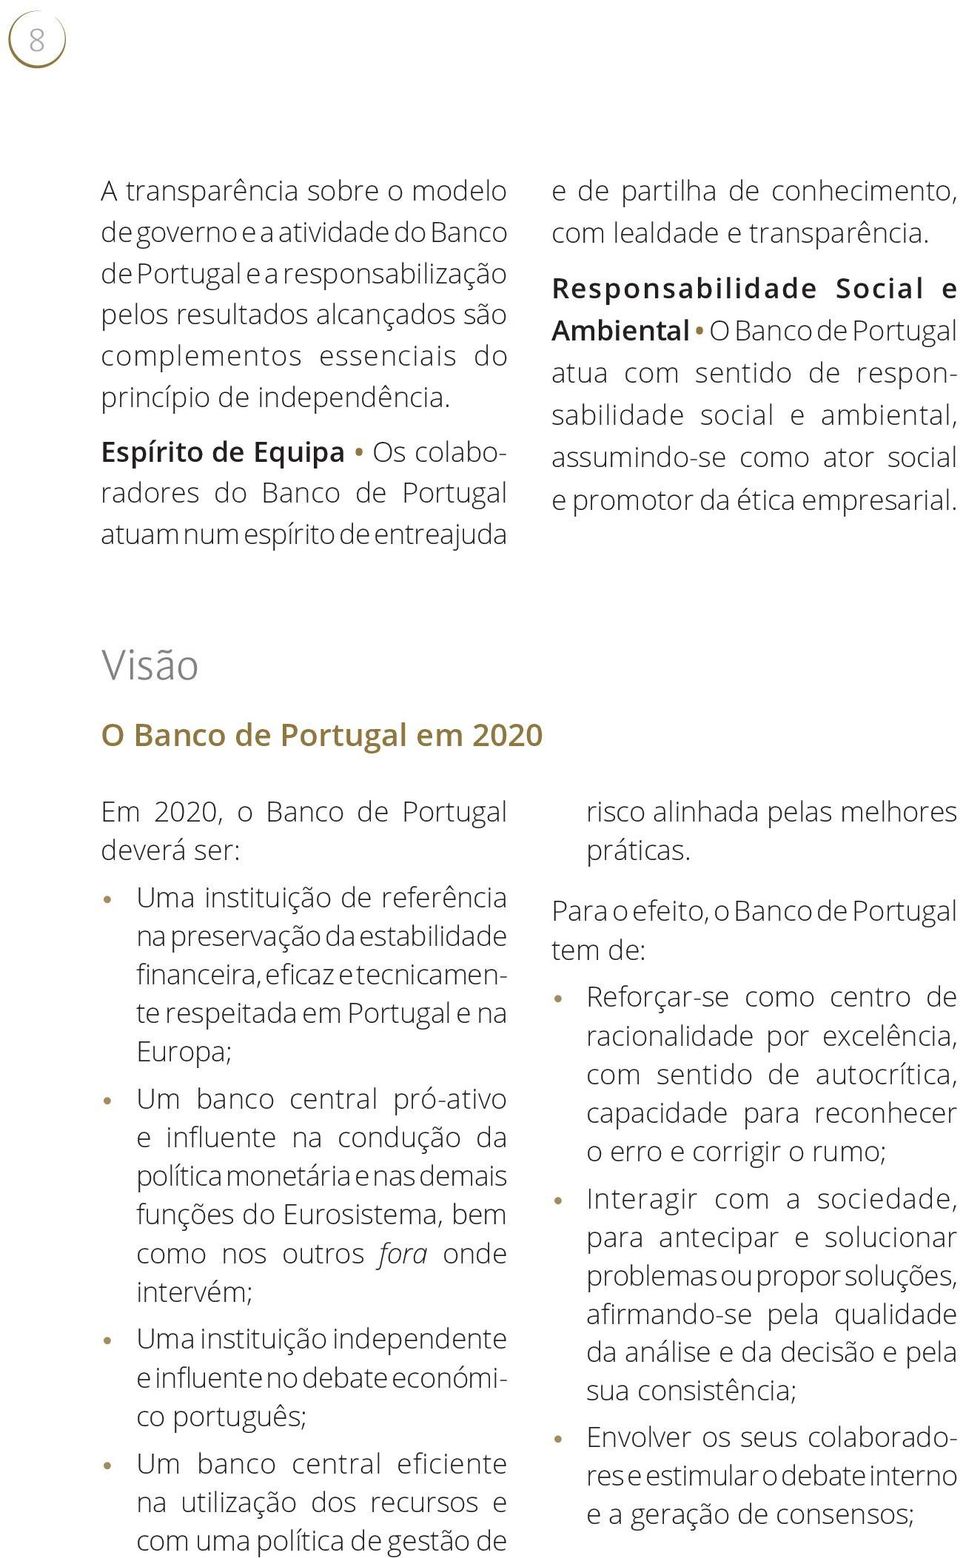 Responsabilidade Social e Ambiental O Banco de Portugal atua com sentido de responsabilidade social e ambiental, assumindo-se como ator social e promotor da ética empresarial.